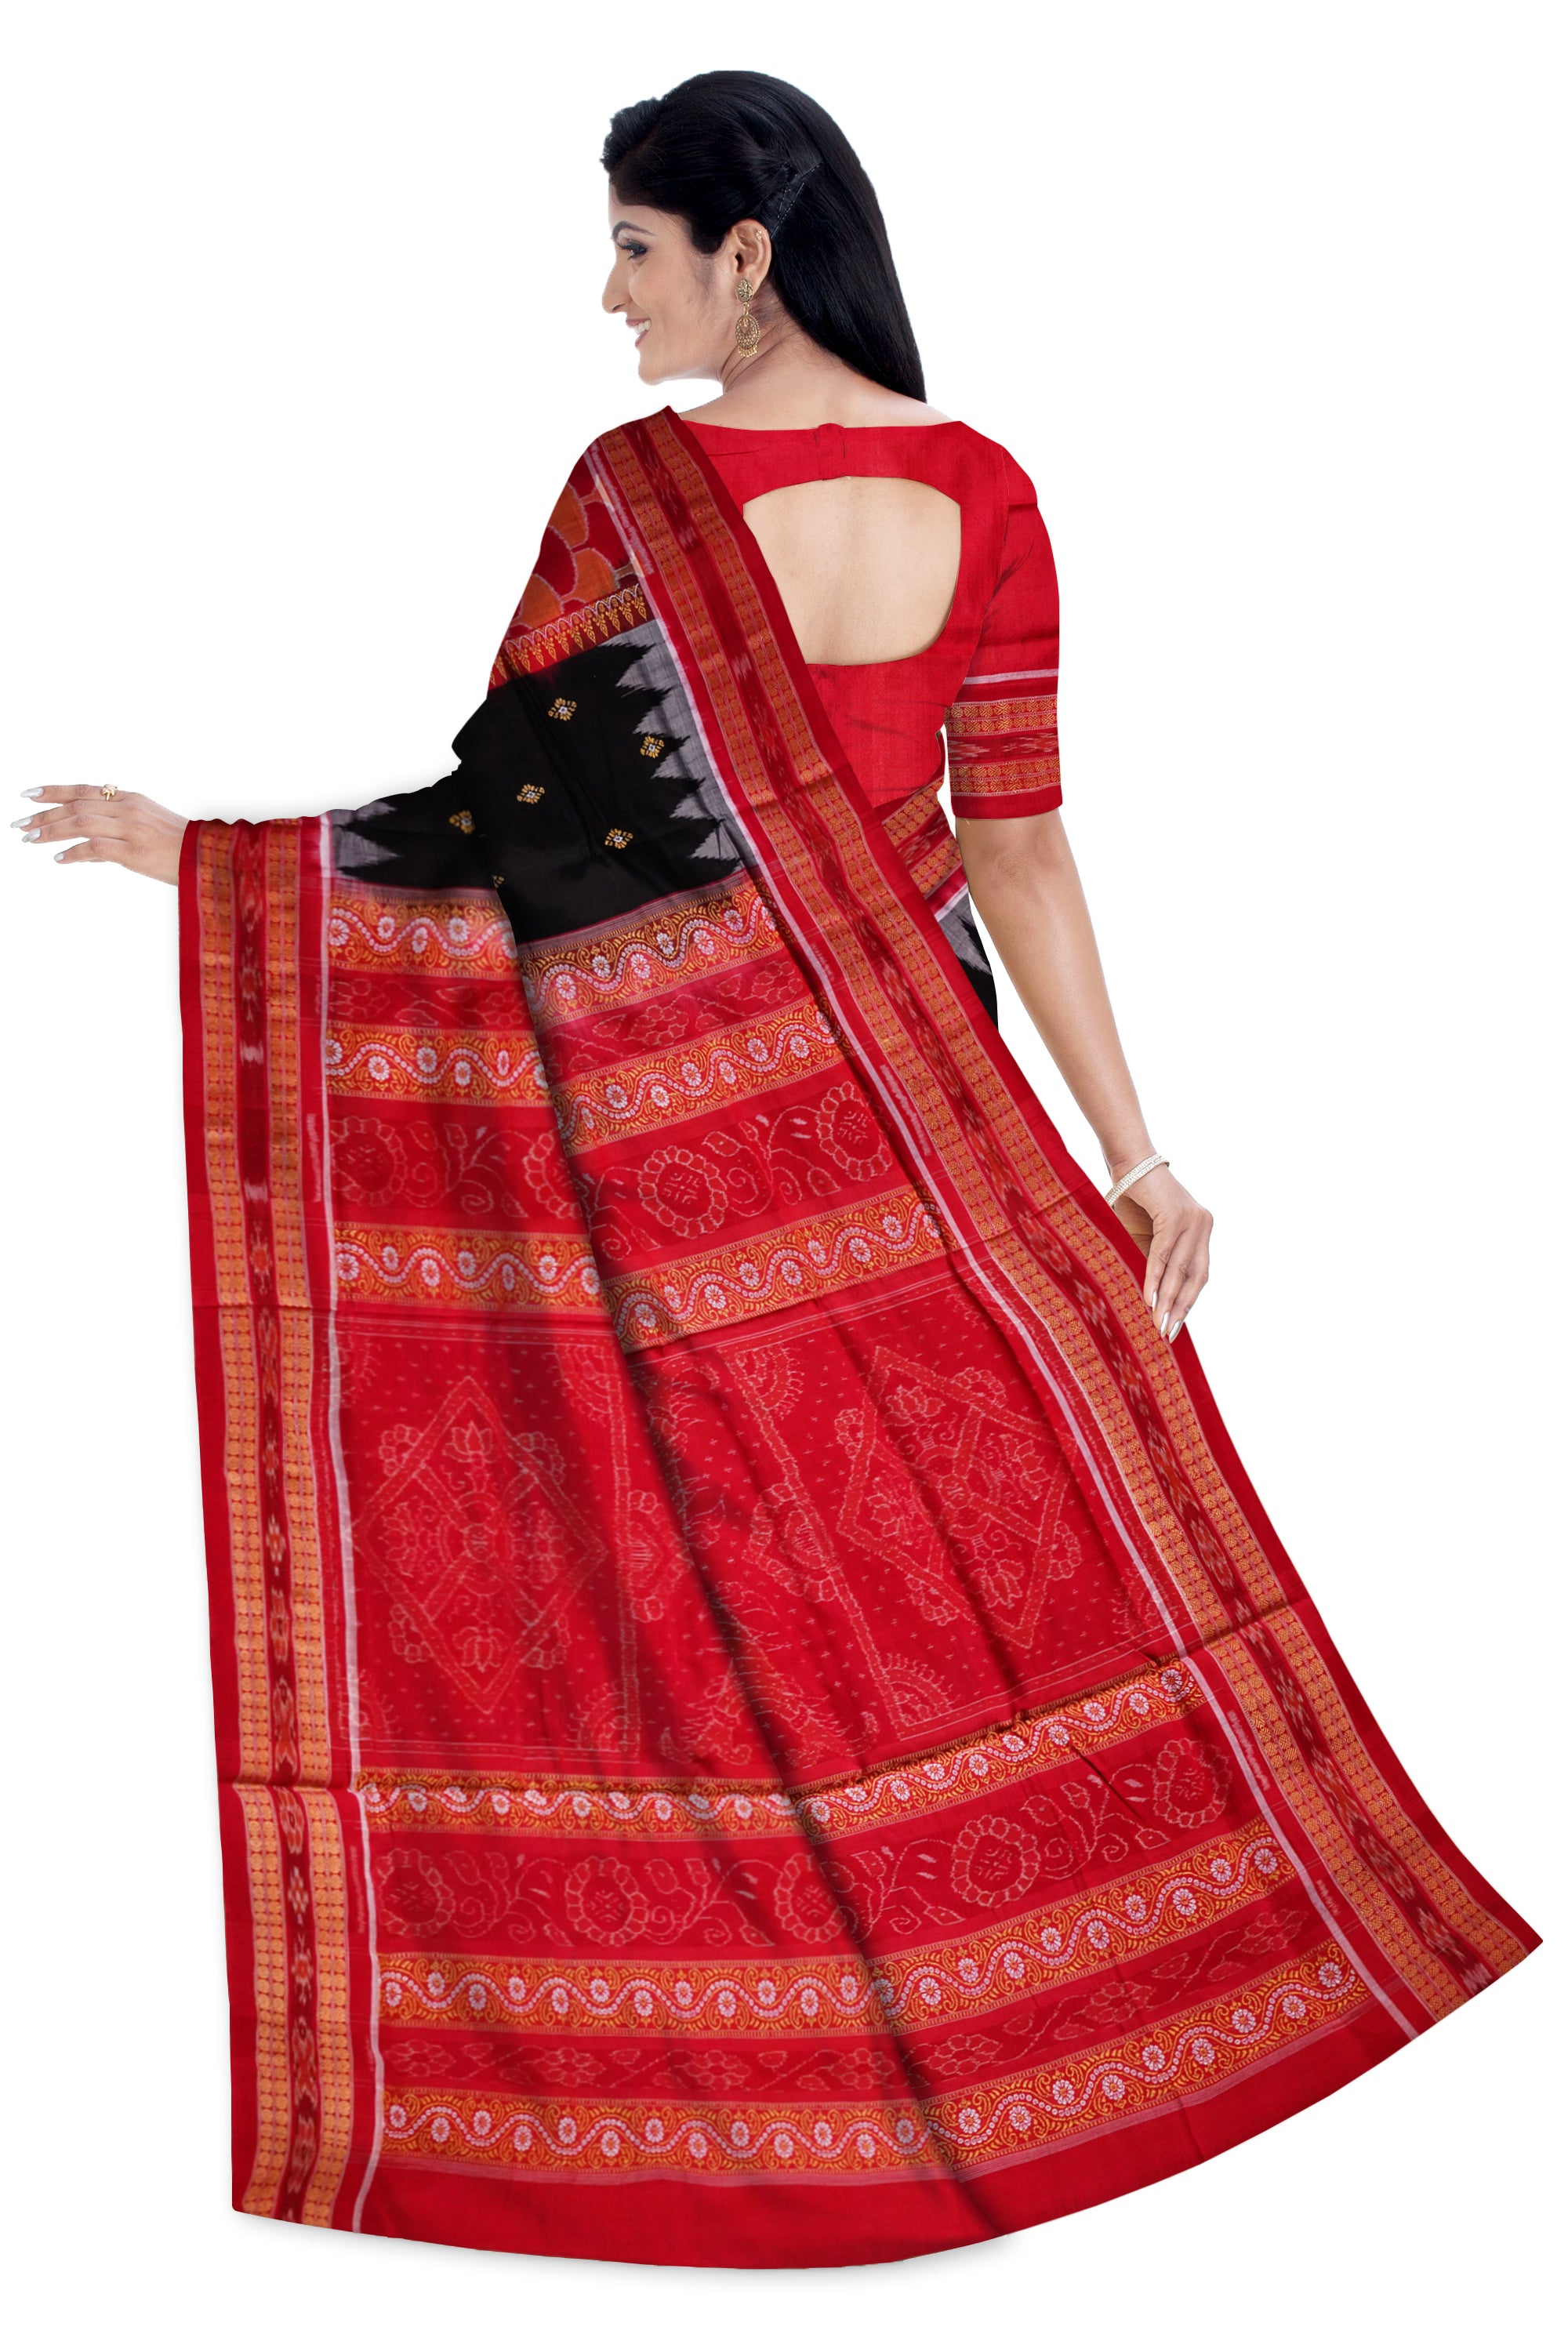 Sambalpuri cotton pere pere saree in Red and Black colour. - Koshali Arts & Crafts Enterprise